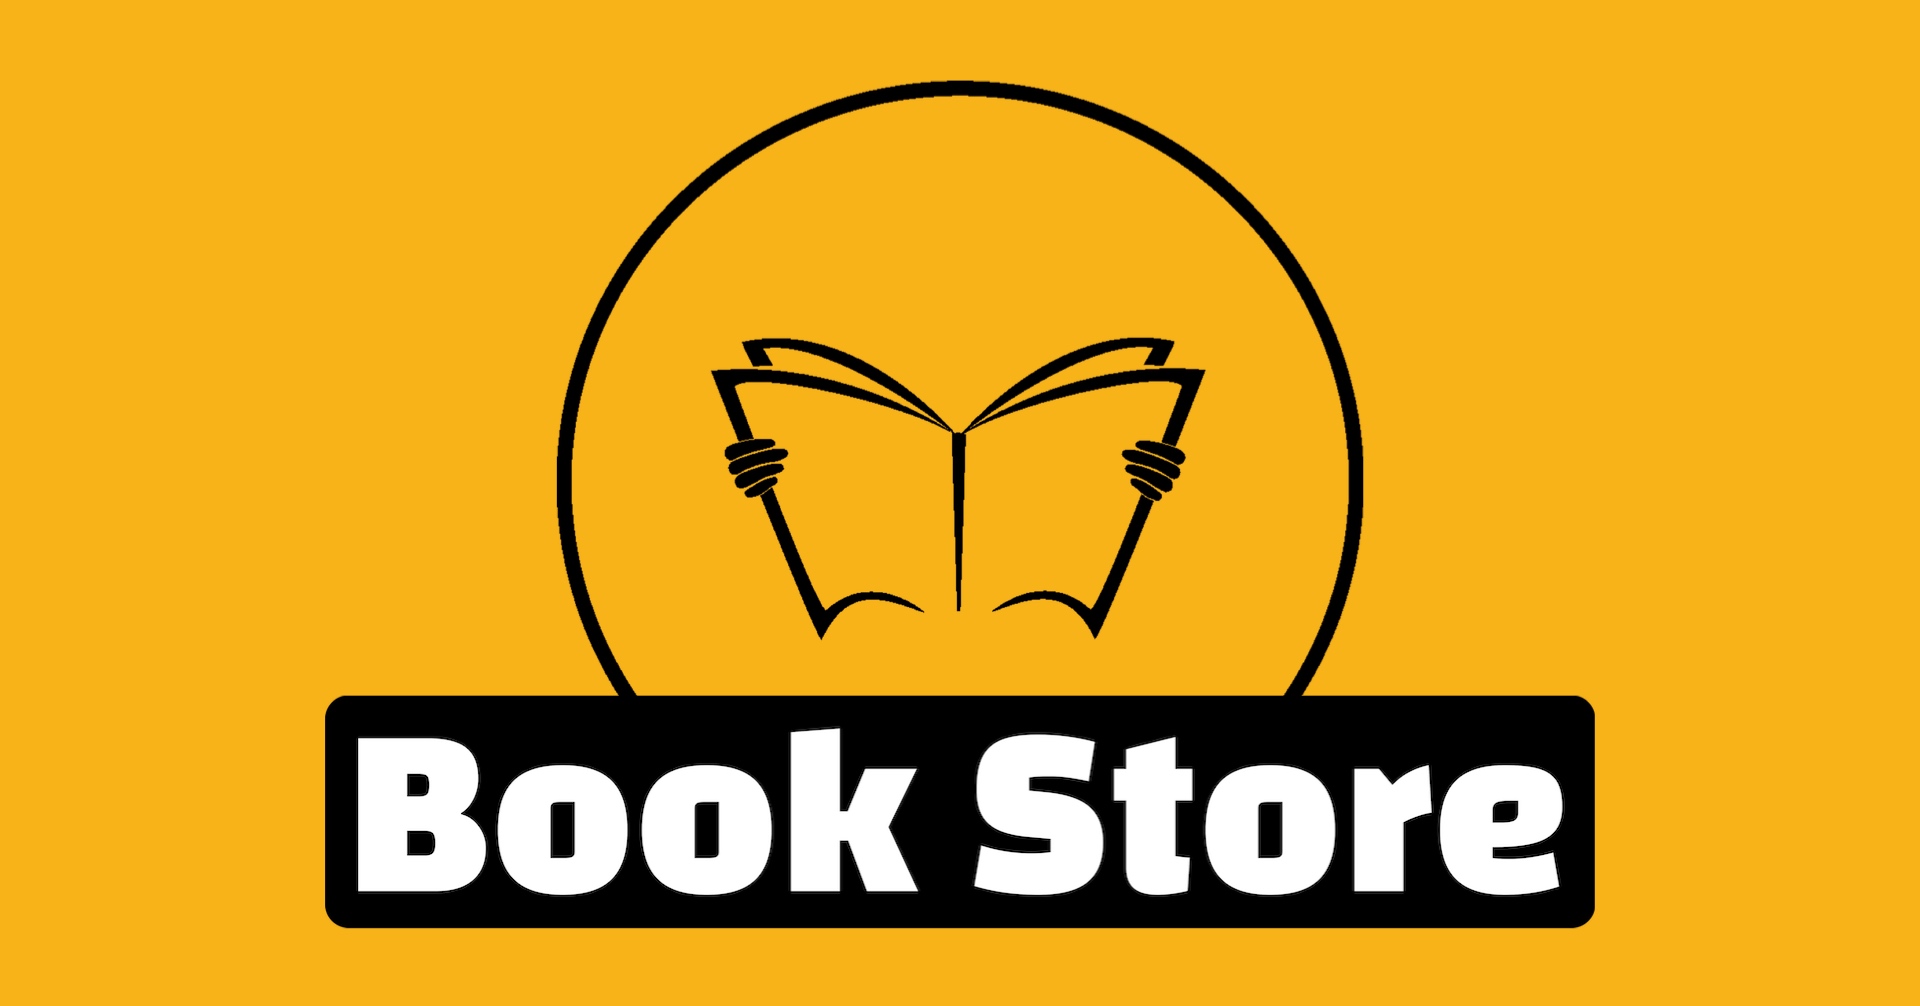 __ 5 __ کتاب فروشی برو به کتاب فروشی از اینجا میتونی کتابهای دیجیتال، فایلهای صوتی، کتابهای کاغذی و فیلم های آموزشی و برنامه های آموزشی کامپیوتری تحت ویندوز خریداری کنی.